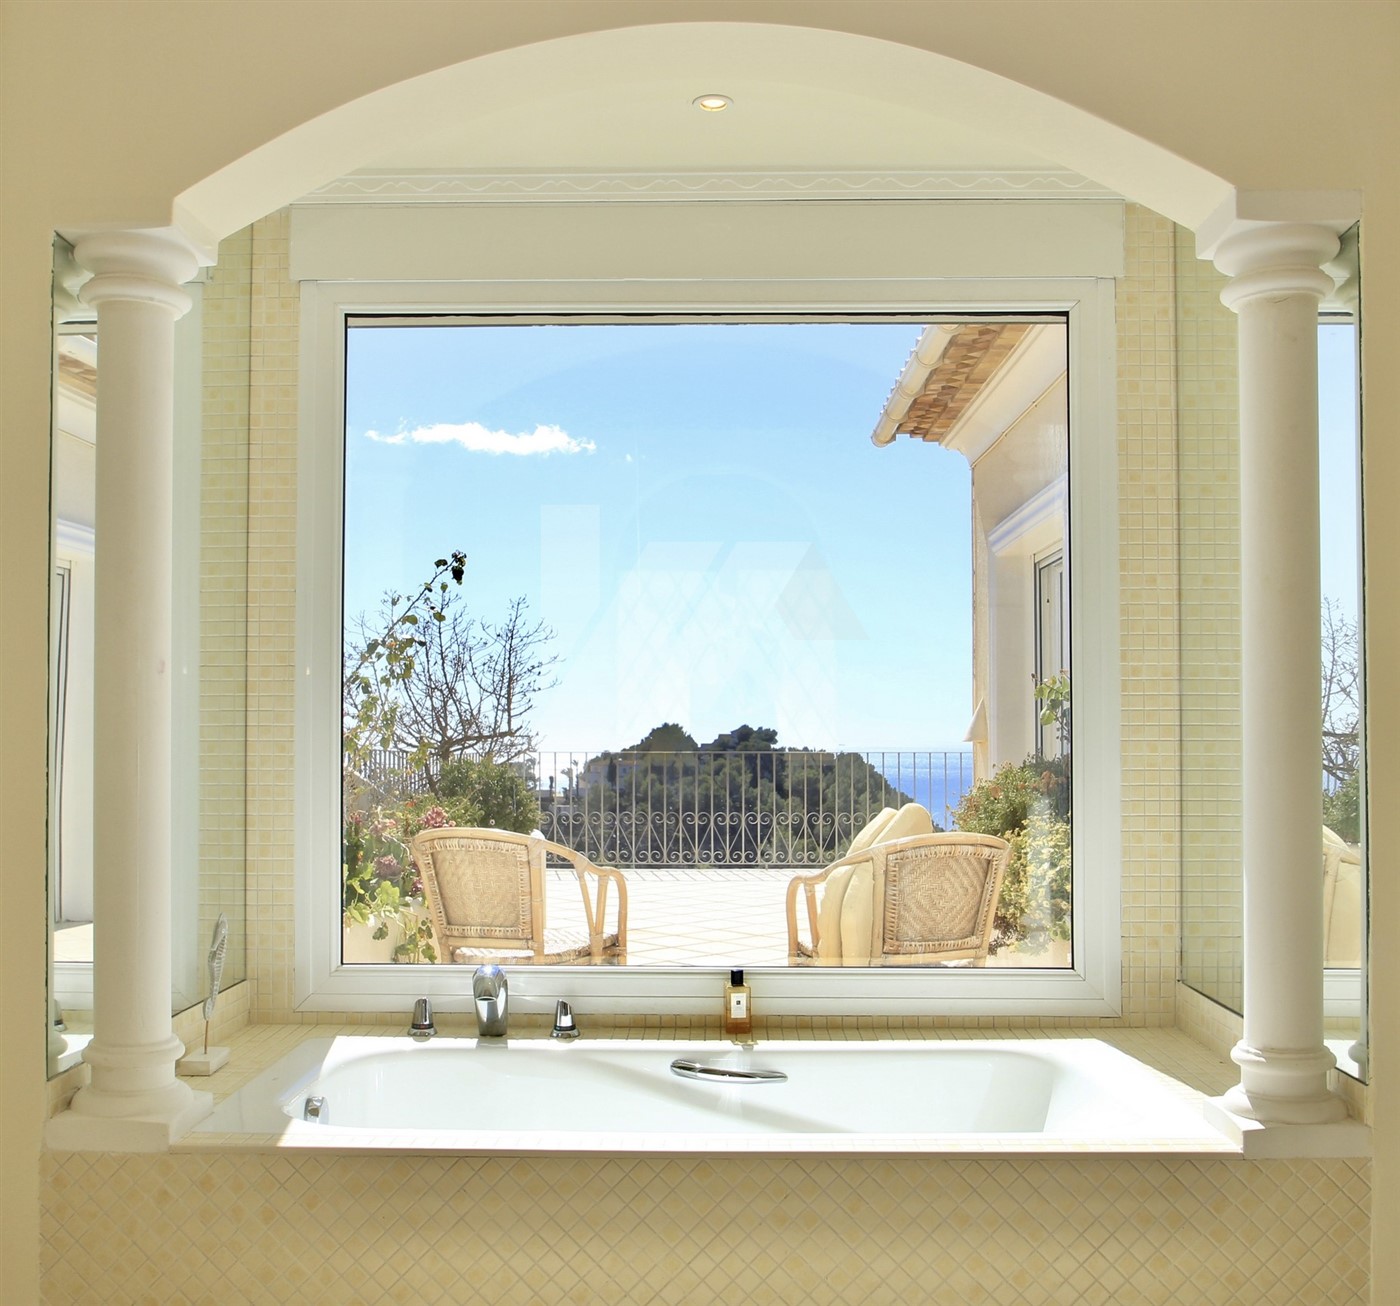 Villa de luxe à vendre avec vue panoramique sur la mer à Moraira, Costa Blanca.